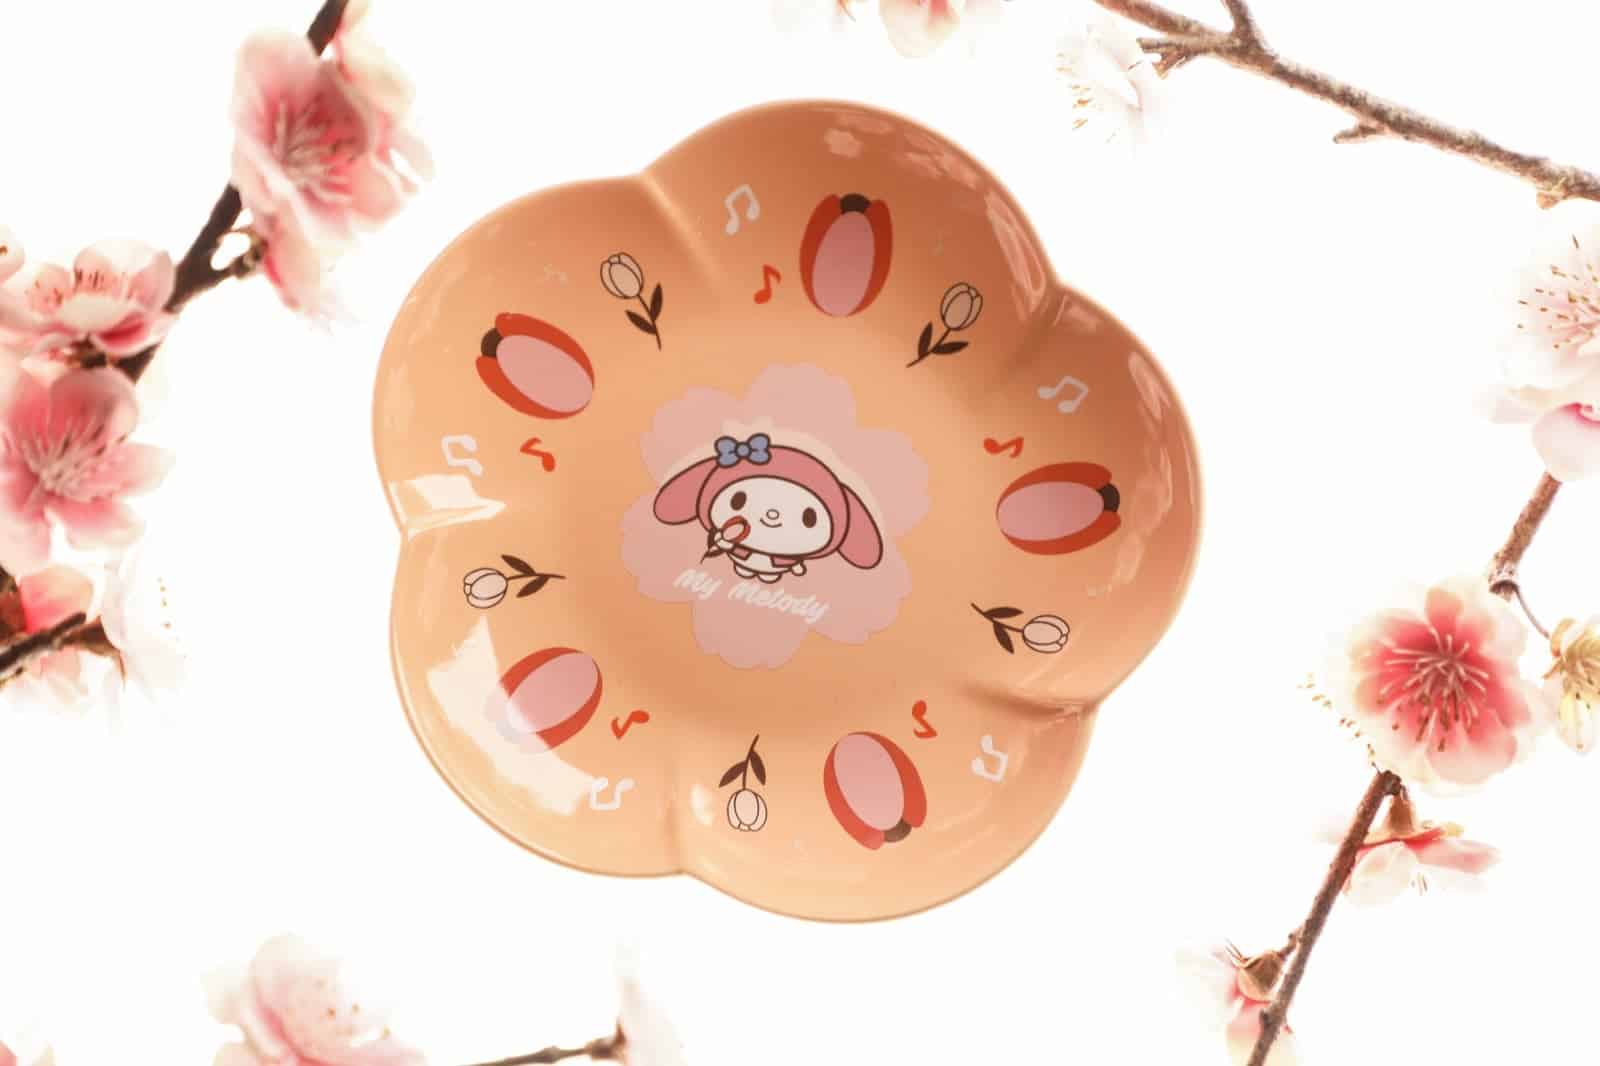 還有更多詳情/圖片7-Eleven X Sanrio：Hello Kitty及My Melody花形陶瓷碟，包幫到你搵到最正嘅優惠呀！